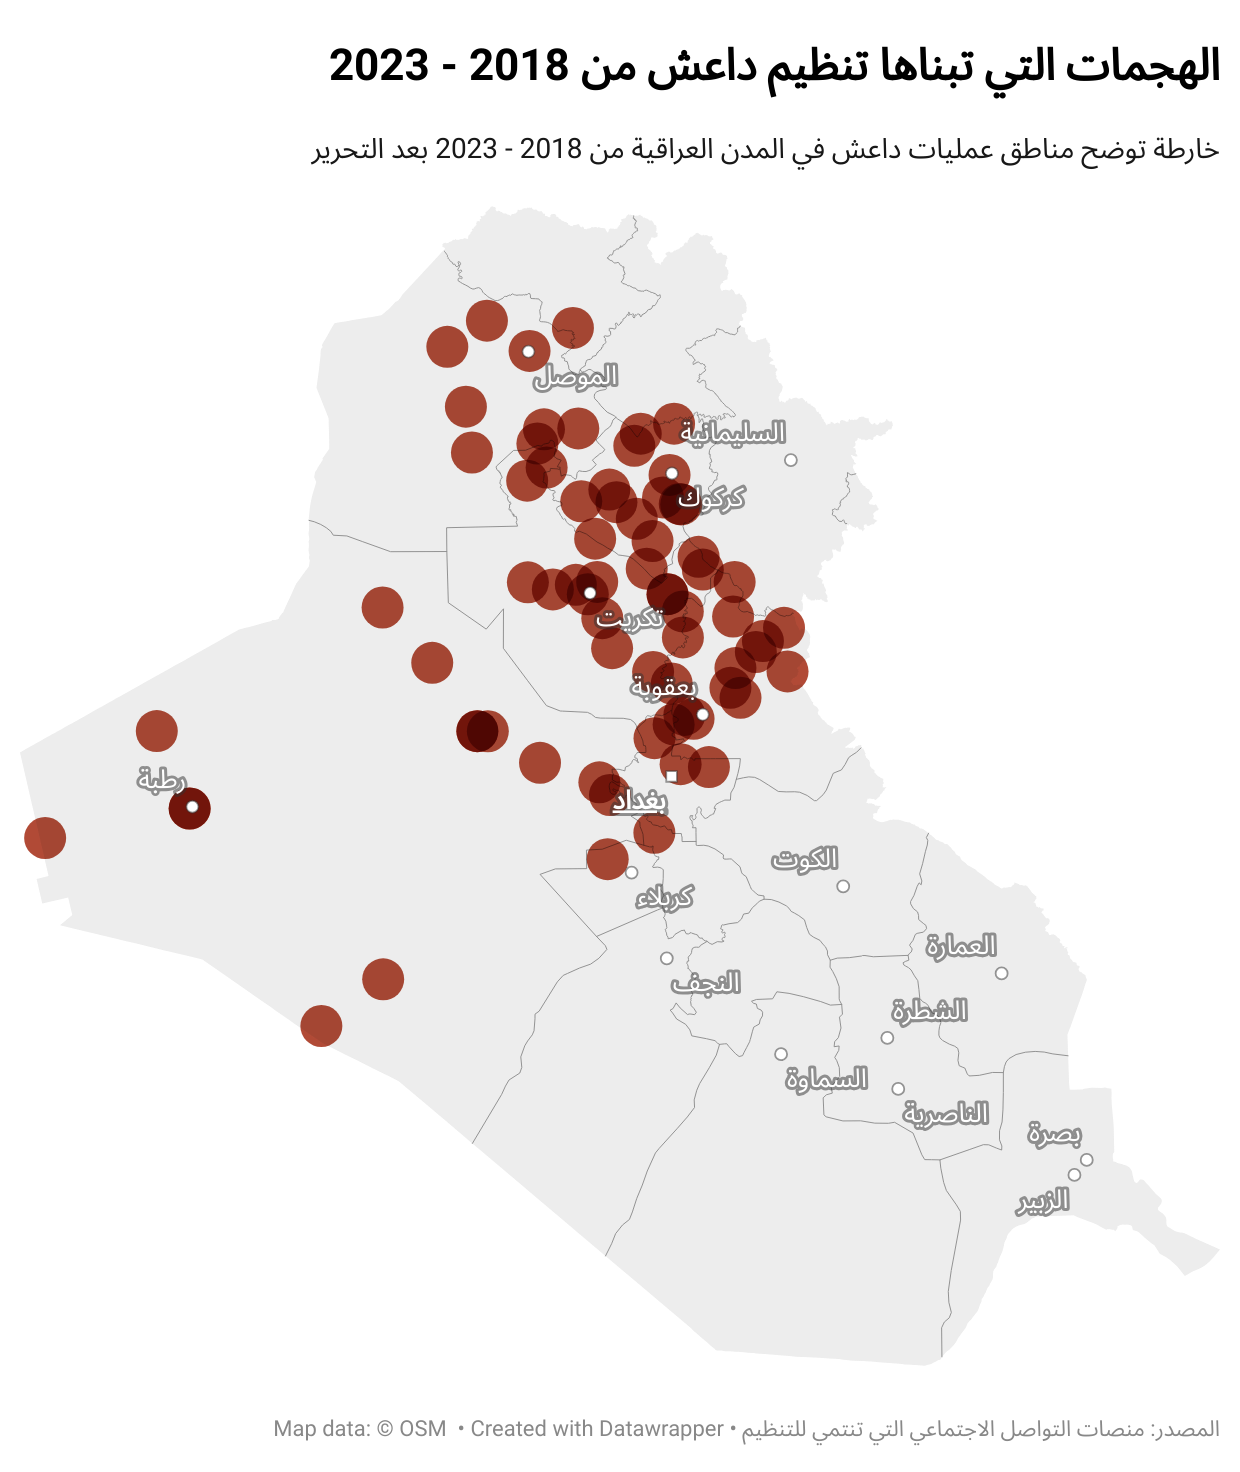 التأسيس والتلاشي.. تاريخ وصراعات “داعش” من البيعة وحتى الانهيار | by Momen  ALZrzoor | Medium